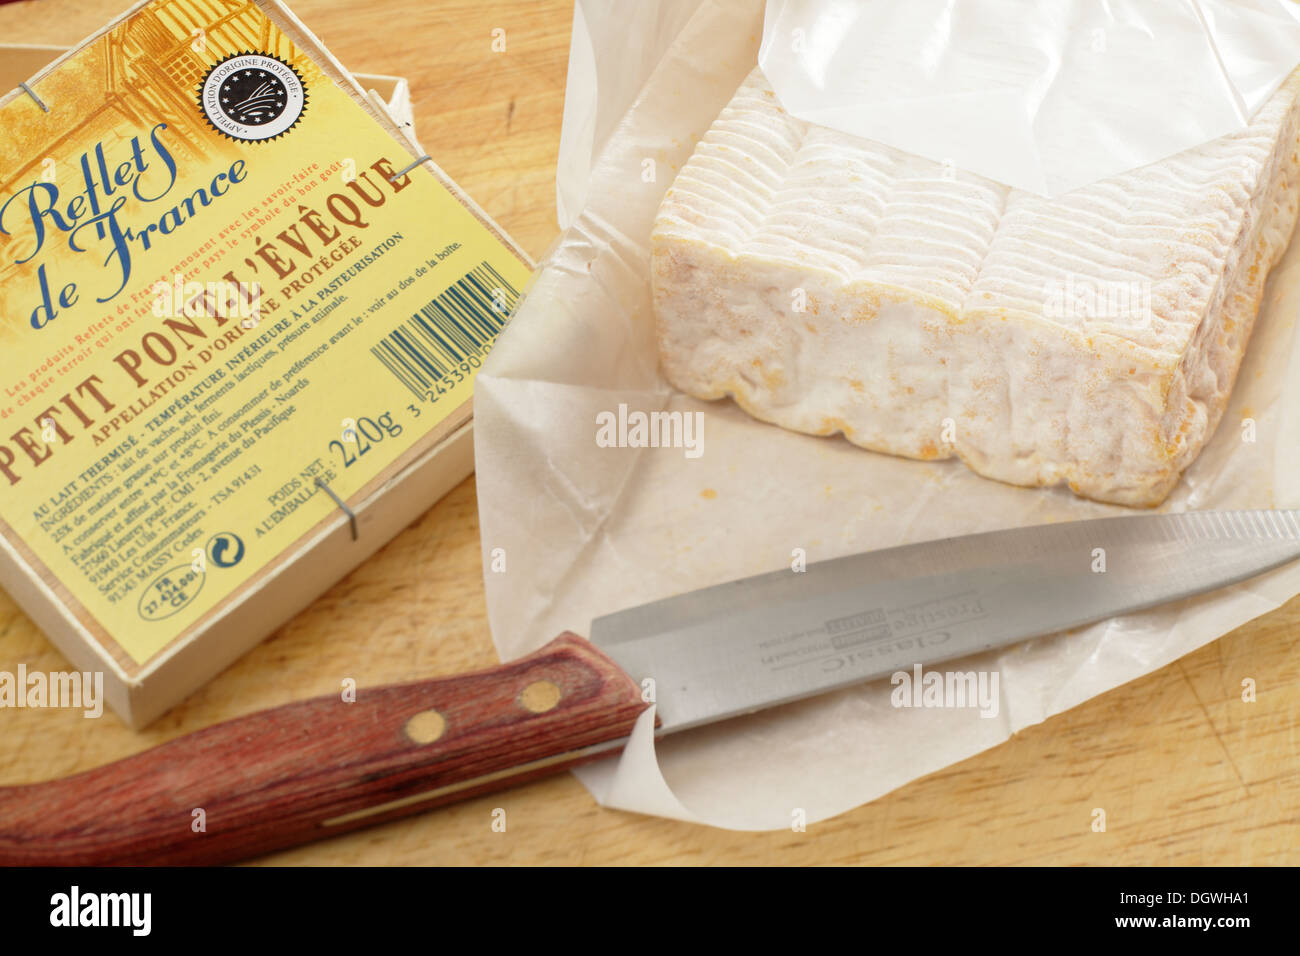 Petit Pont L'eveque französischer Käse aus Carrefour Marke Reflets de France auf einem Brett mit einem Messer. Stockfoto